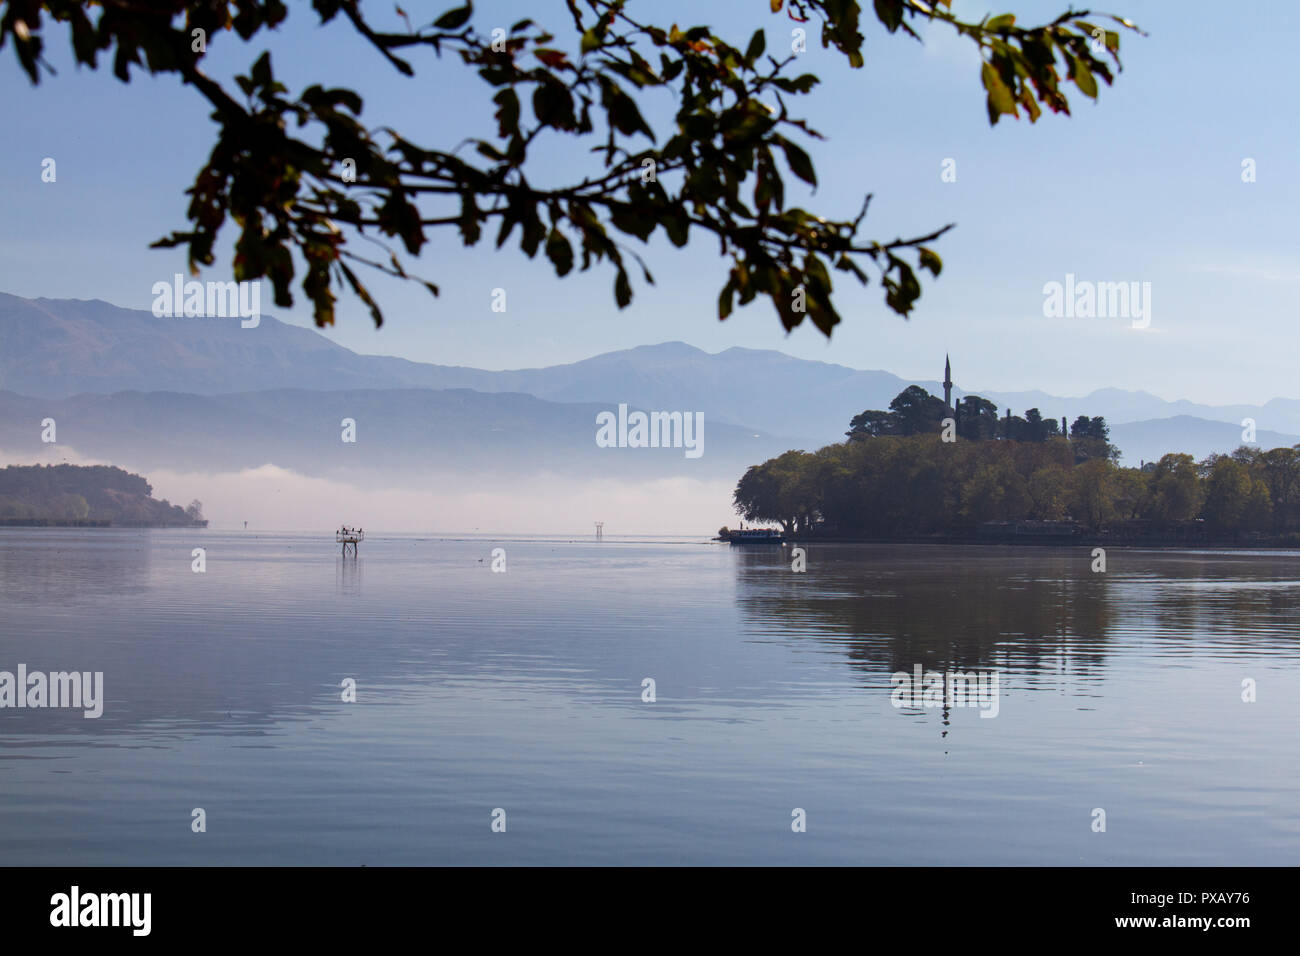 Atmosphärische Szene von See Pamvotis an einem nebligen Morgen in Ioannina, Griechenland, mit Aslan Pasha Moschee im Hintergrund Stockfoto